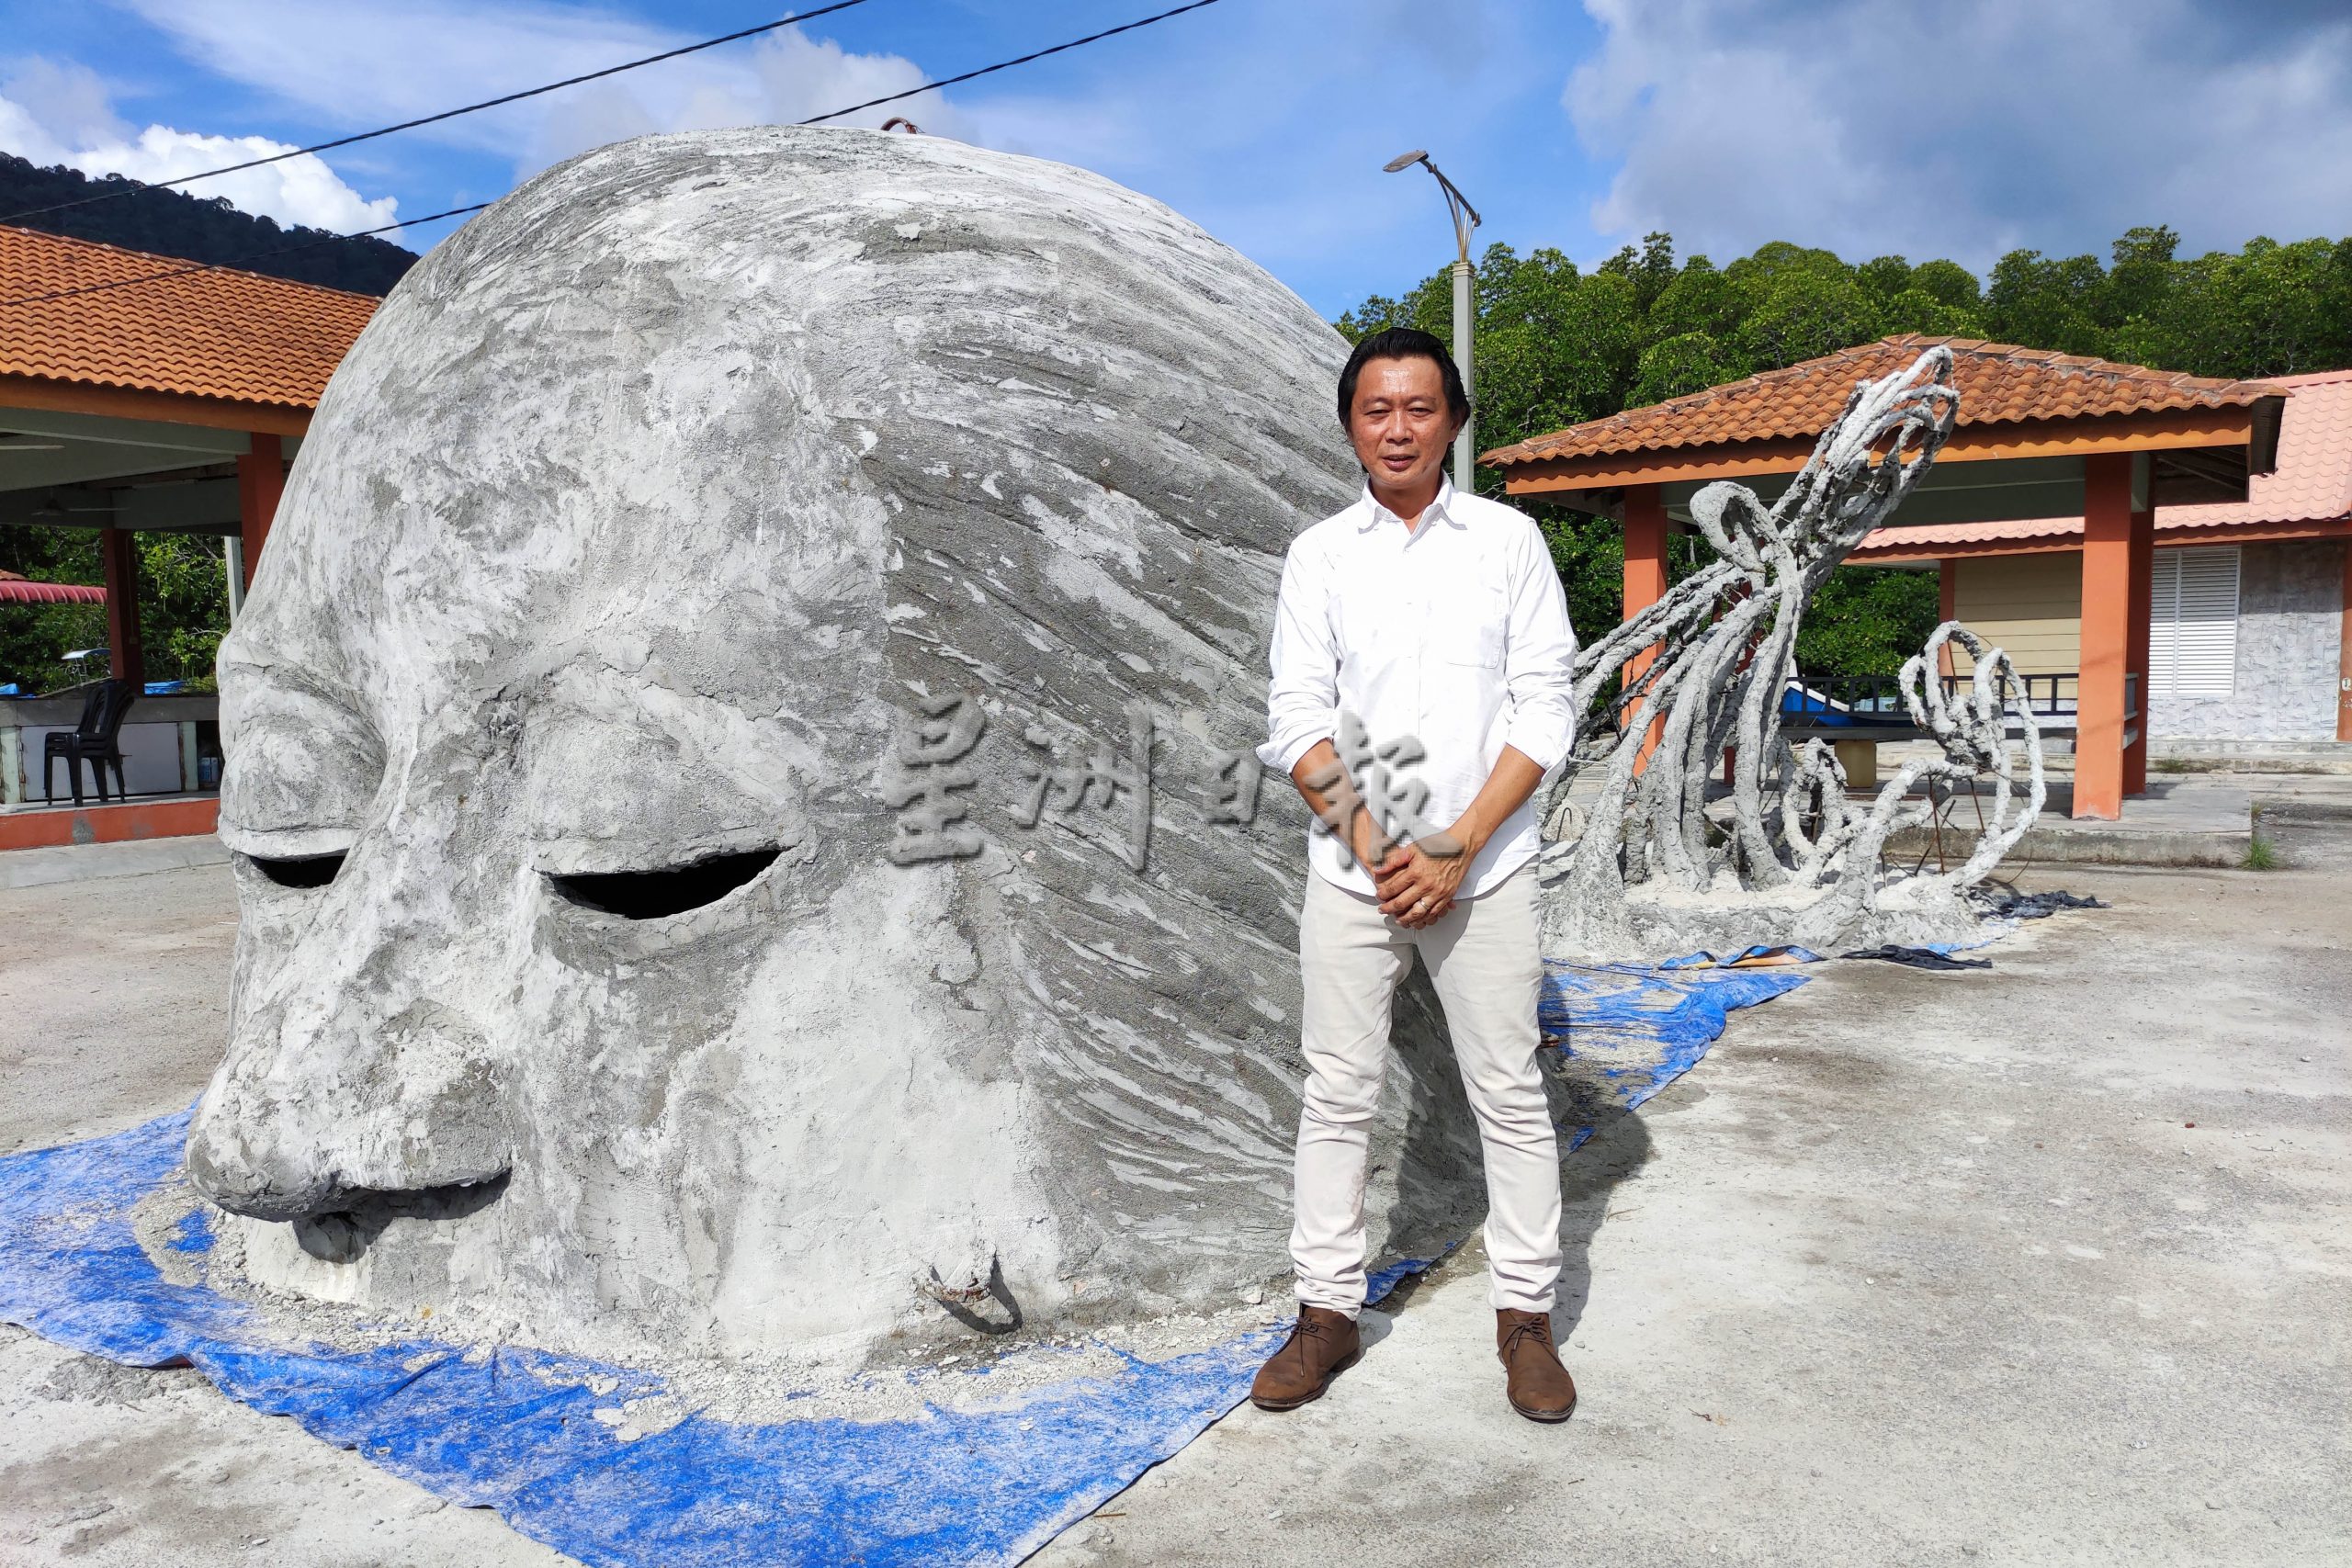 结合艺术创作及保护海洋生态概念 浮罗交怡将有海底雕塑